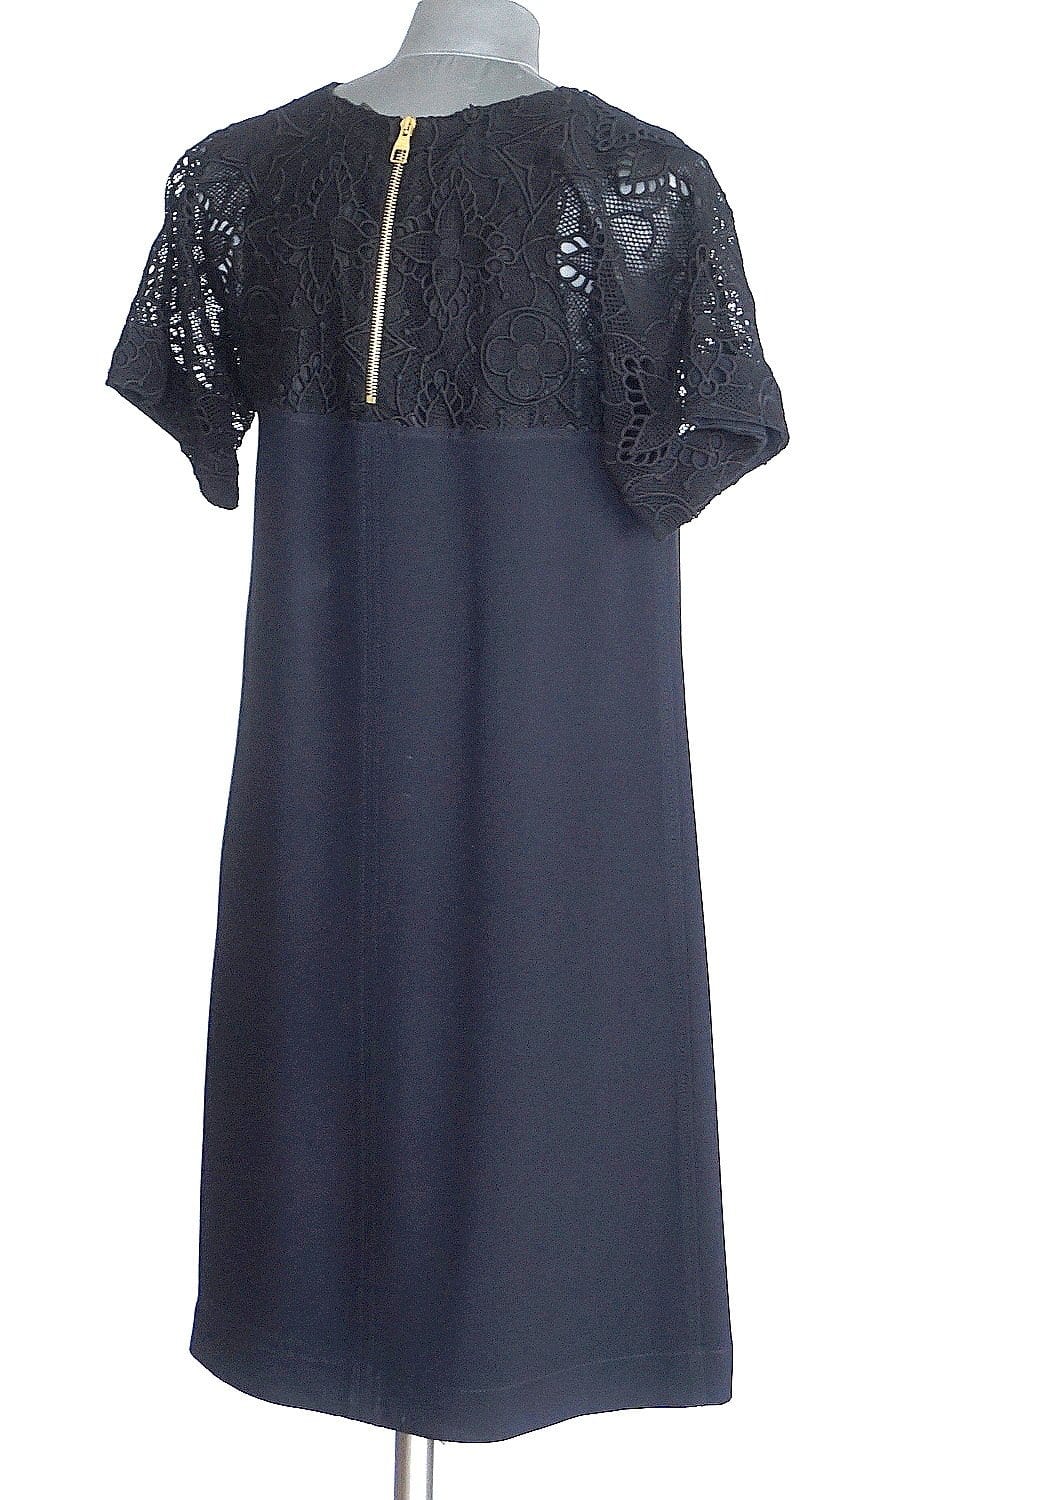 Louis Vuitton Utility Zipper Dress BLACK. Size 36